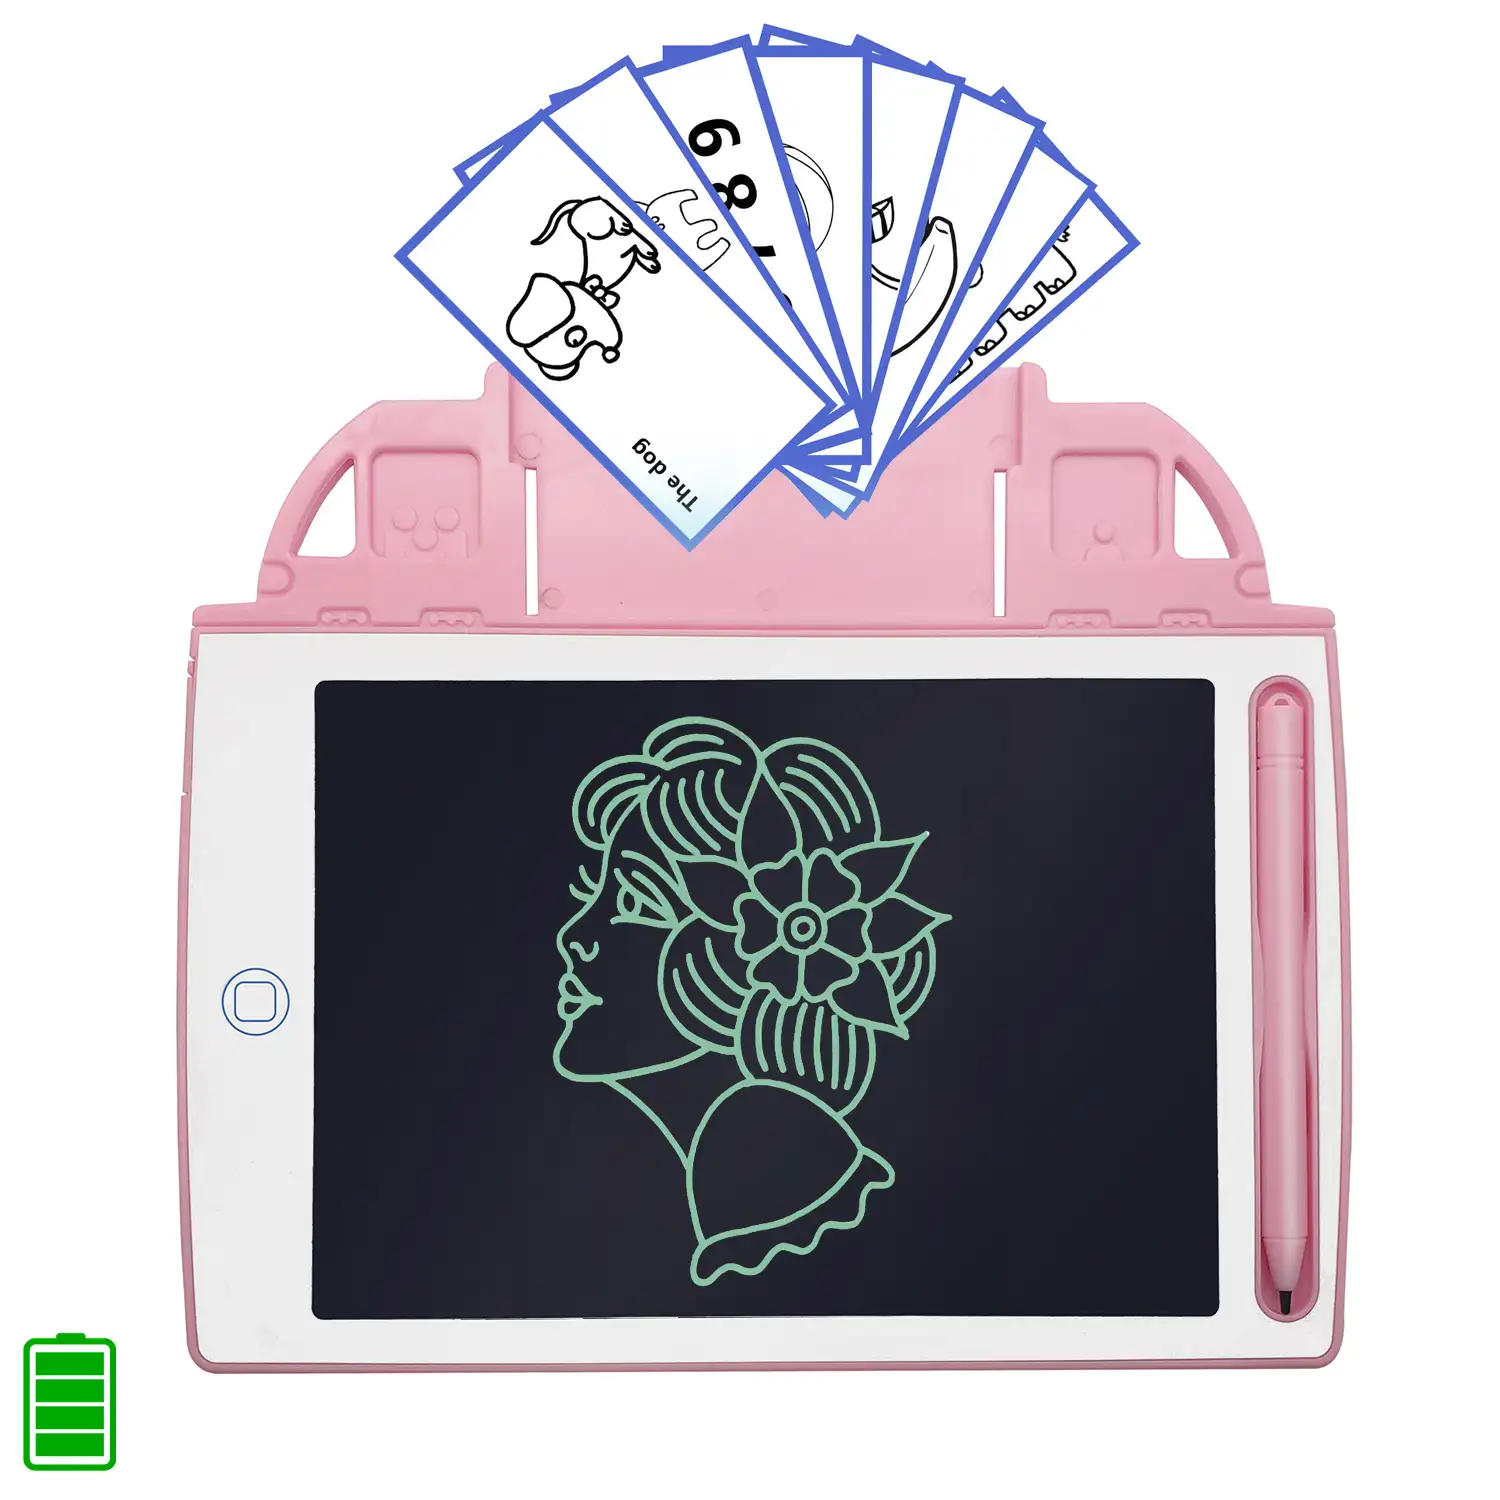 Tableta de dibujo y escritura LCD de 8,4 pulgadas. Portátil, con bloqueo de borrado y batería recargable. Incluye tarjetas de aprendizaje para escribir y dibujar.